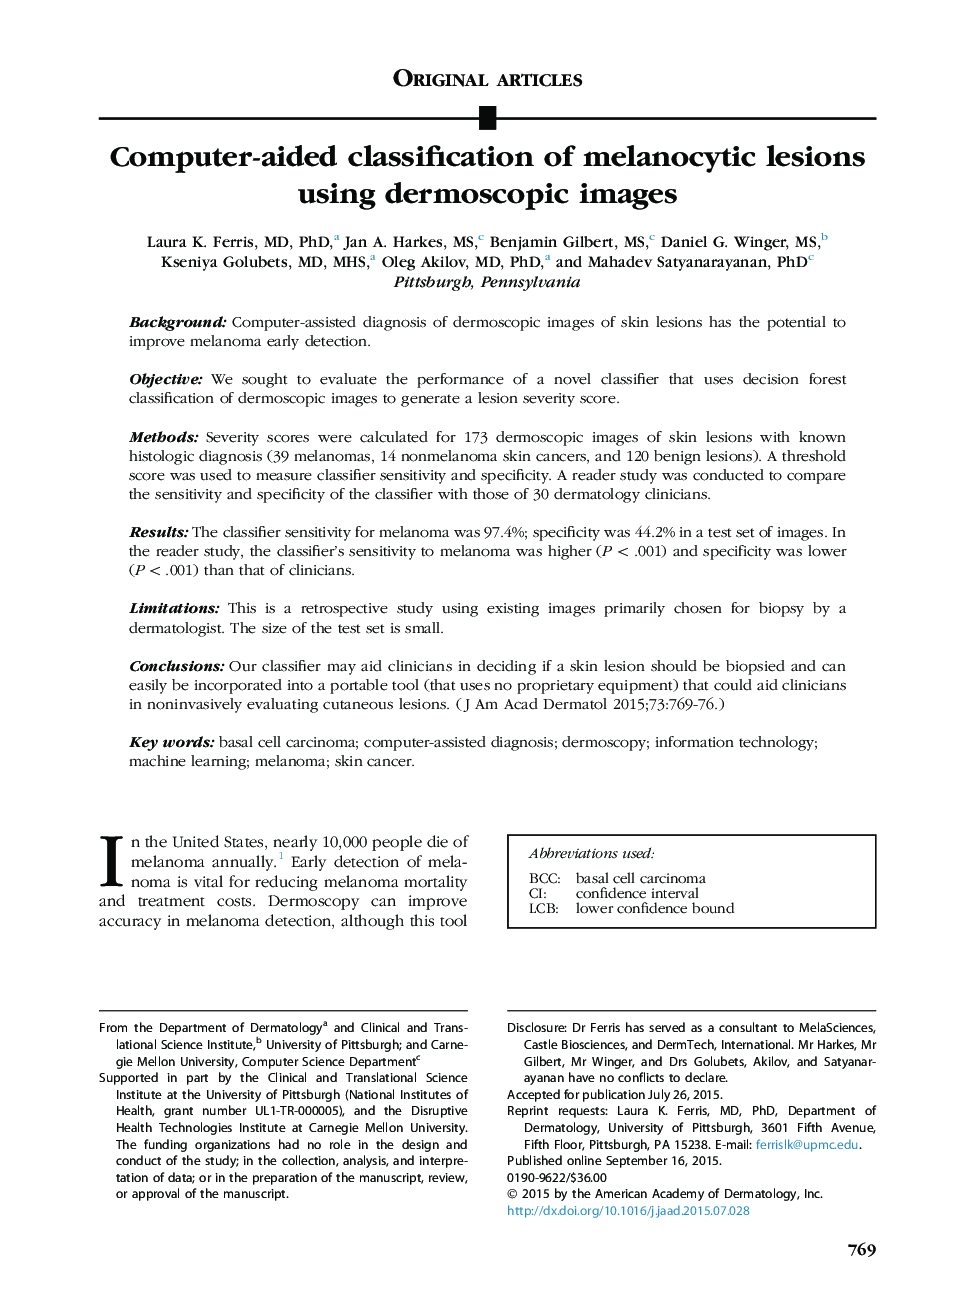 طبقه بندی تلفیقی ضایعات ملانوسیتی با استفاده از تصاویر درماتوسکوپی 